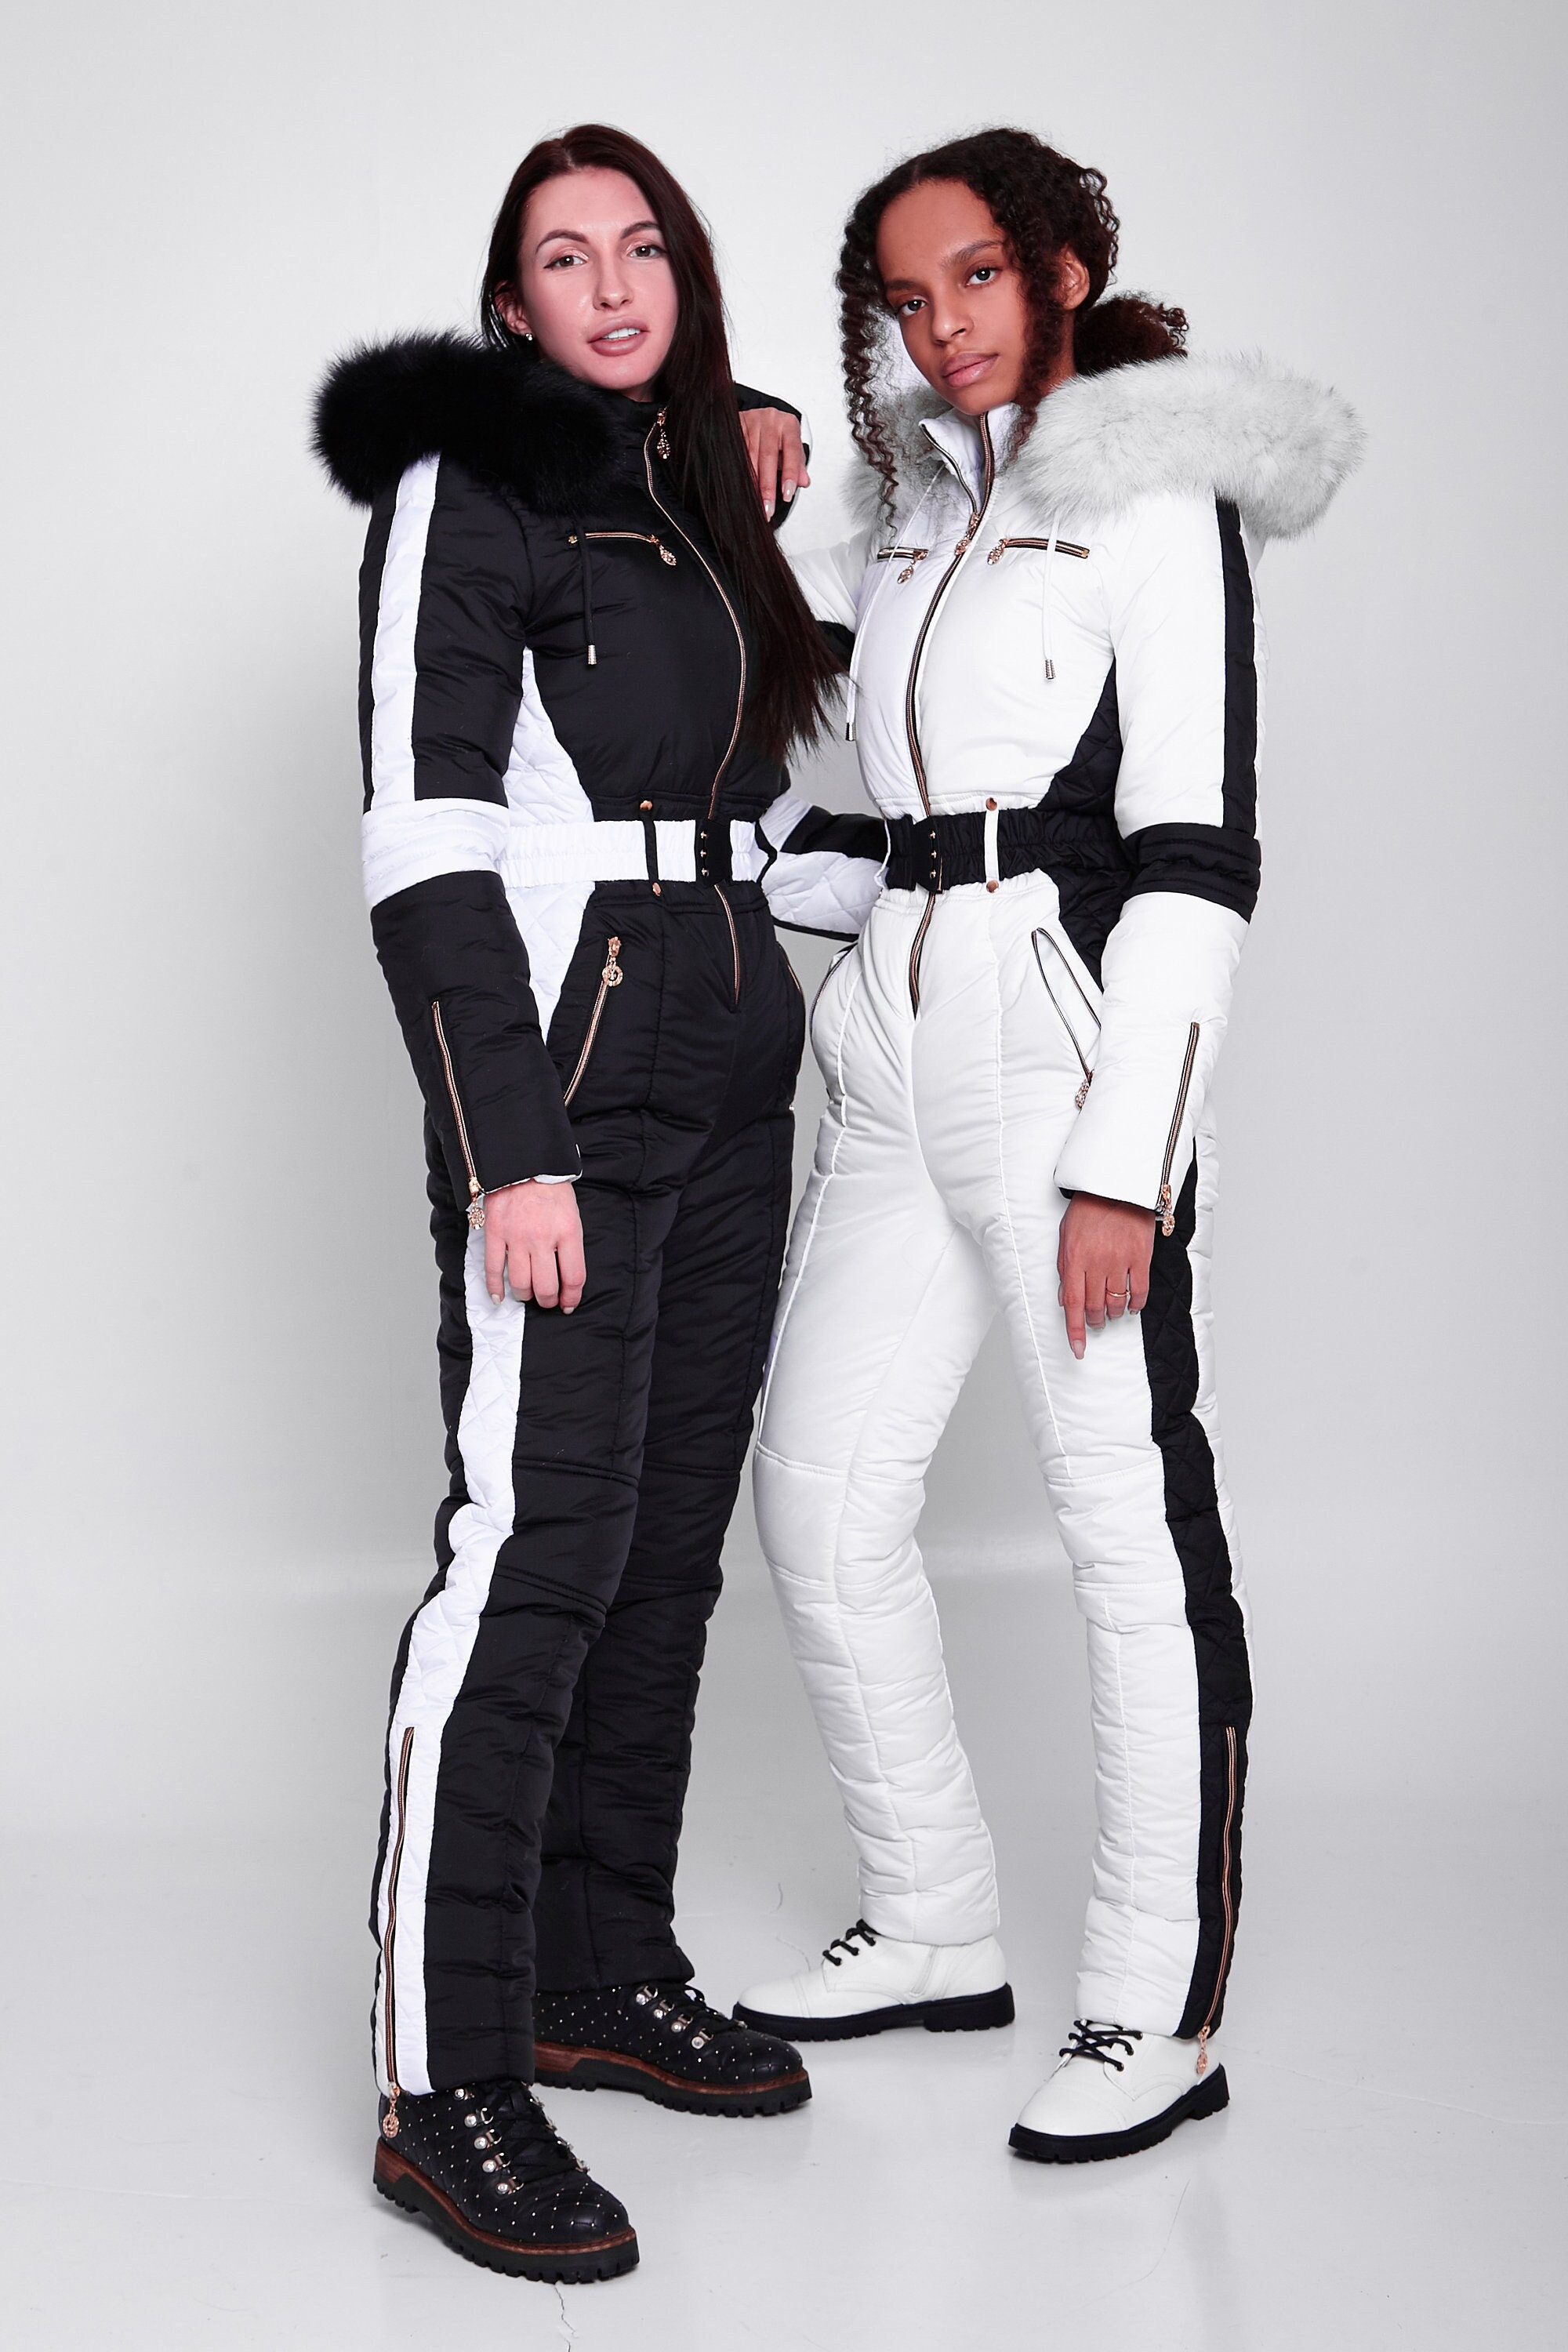 Trajes de esquí Traje de esquí Mujer Ropa de snowboard Skims impermeables  Chaquetas de invierno para mujer Traje de abrigo para la nieve Mono frío